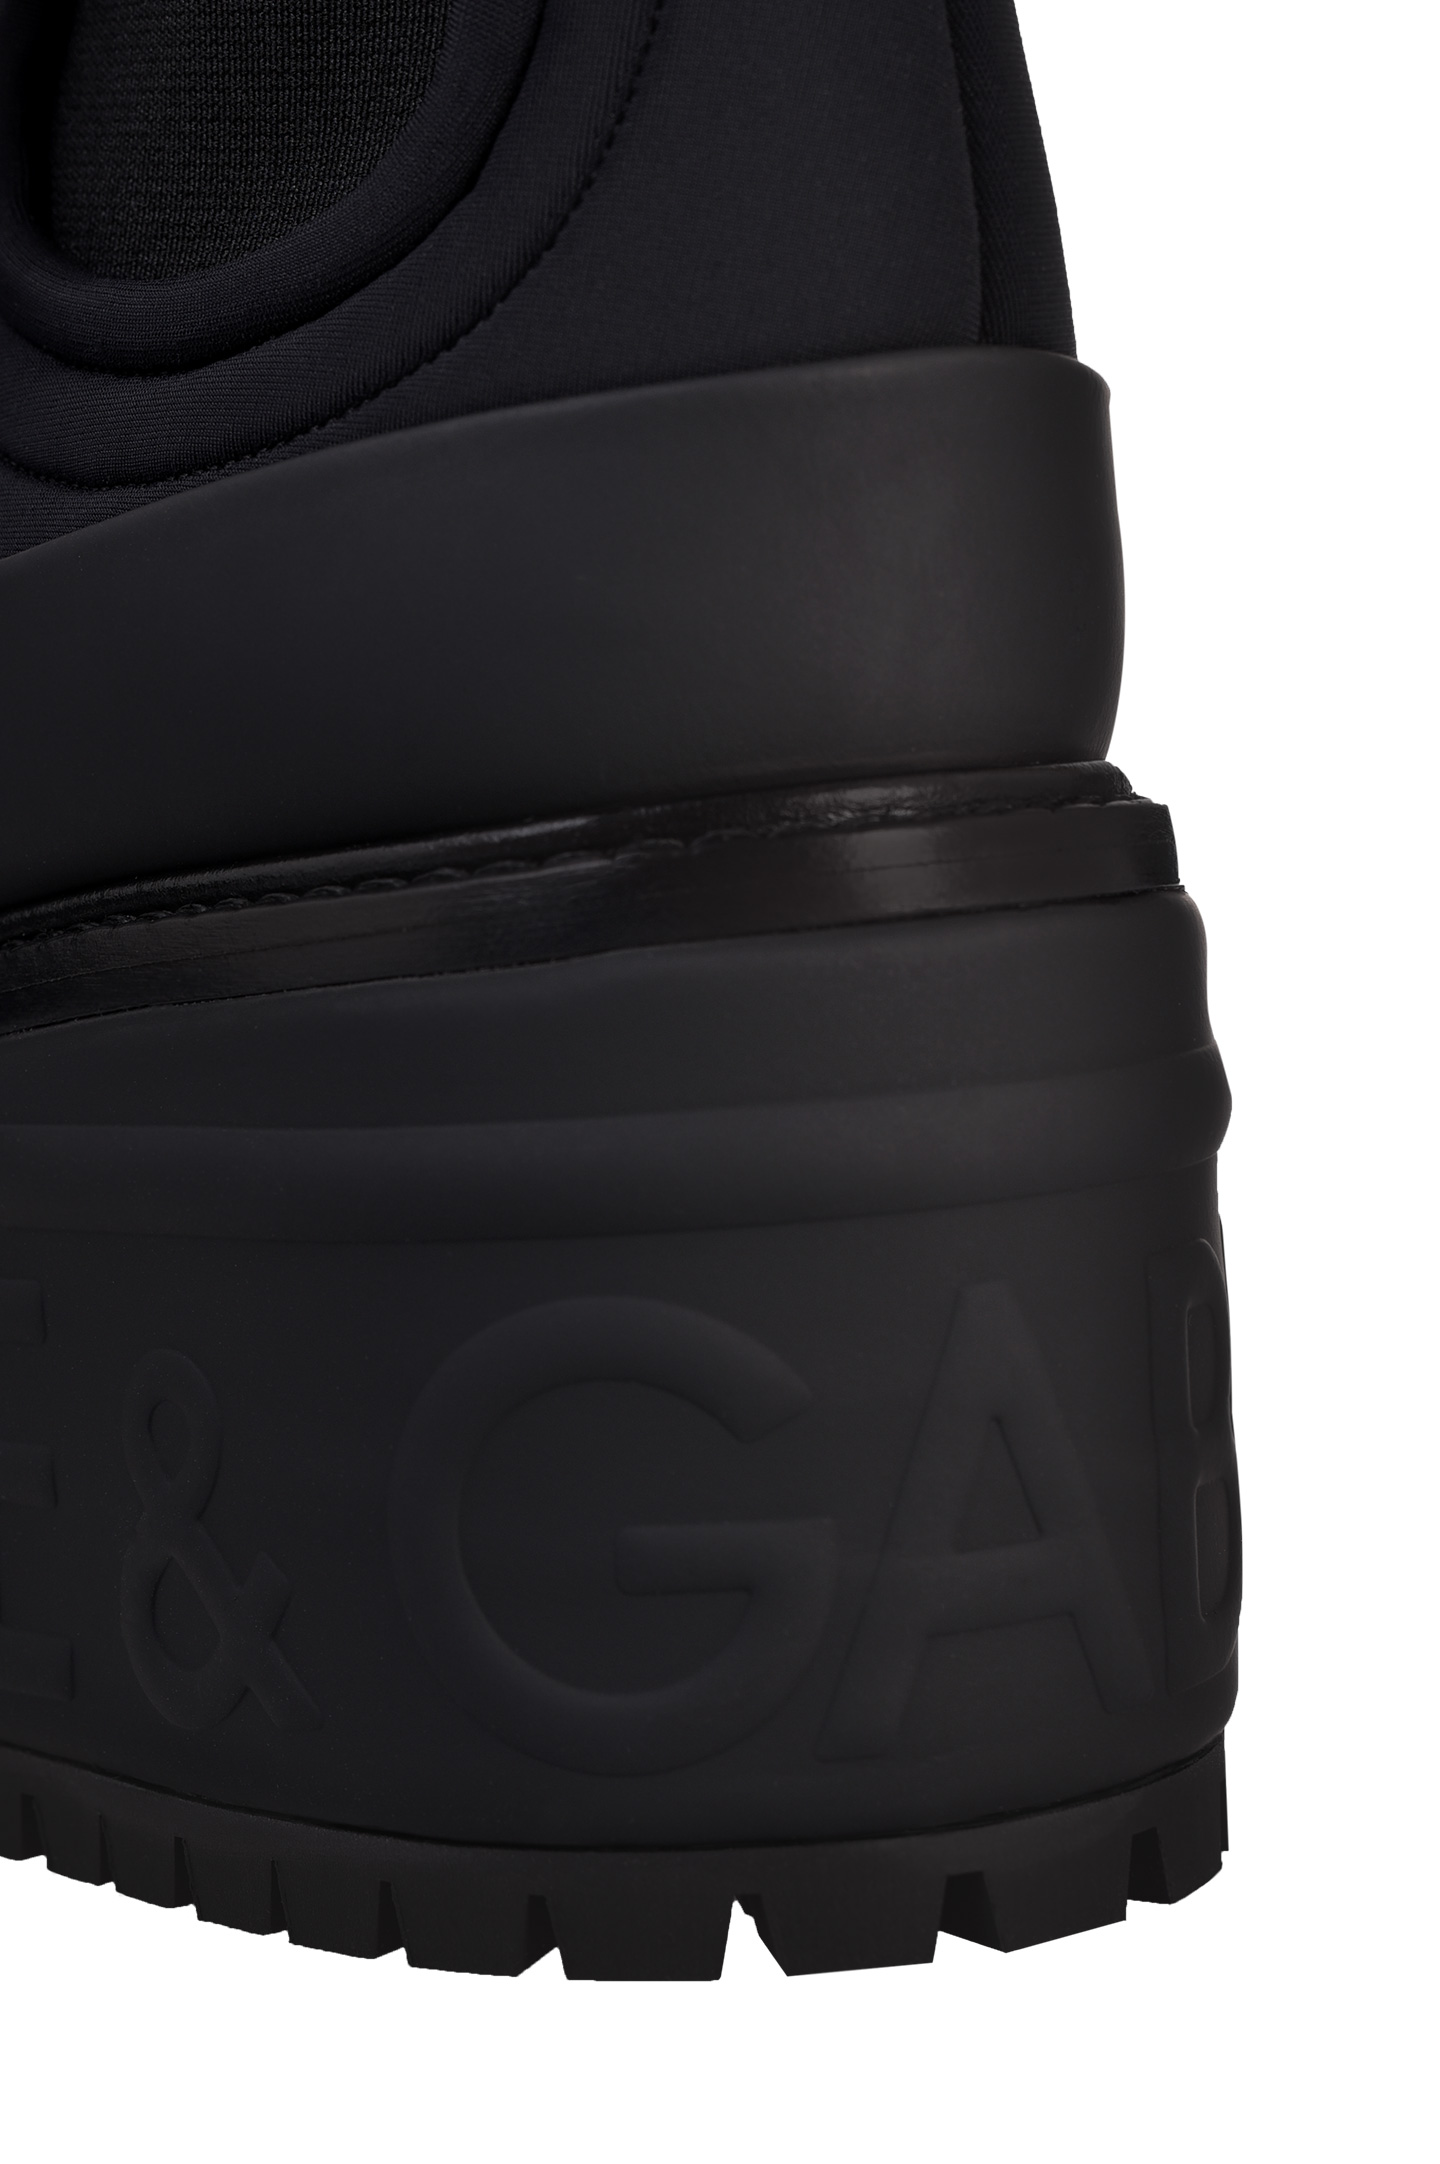 Ботинки DOLCE & GABBANA CT0772 AQ105, цвет: Черный, Женский